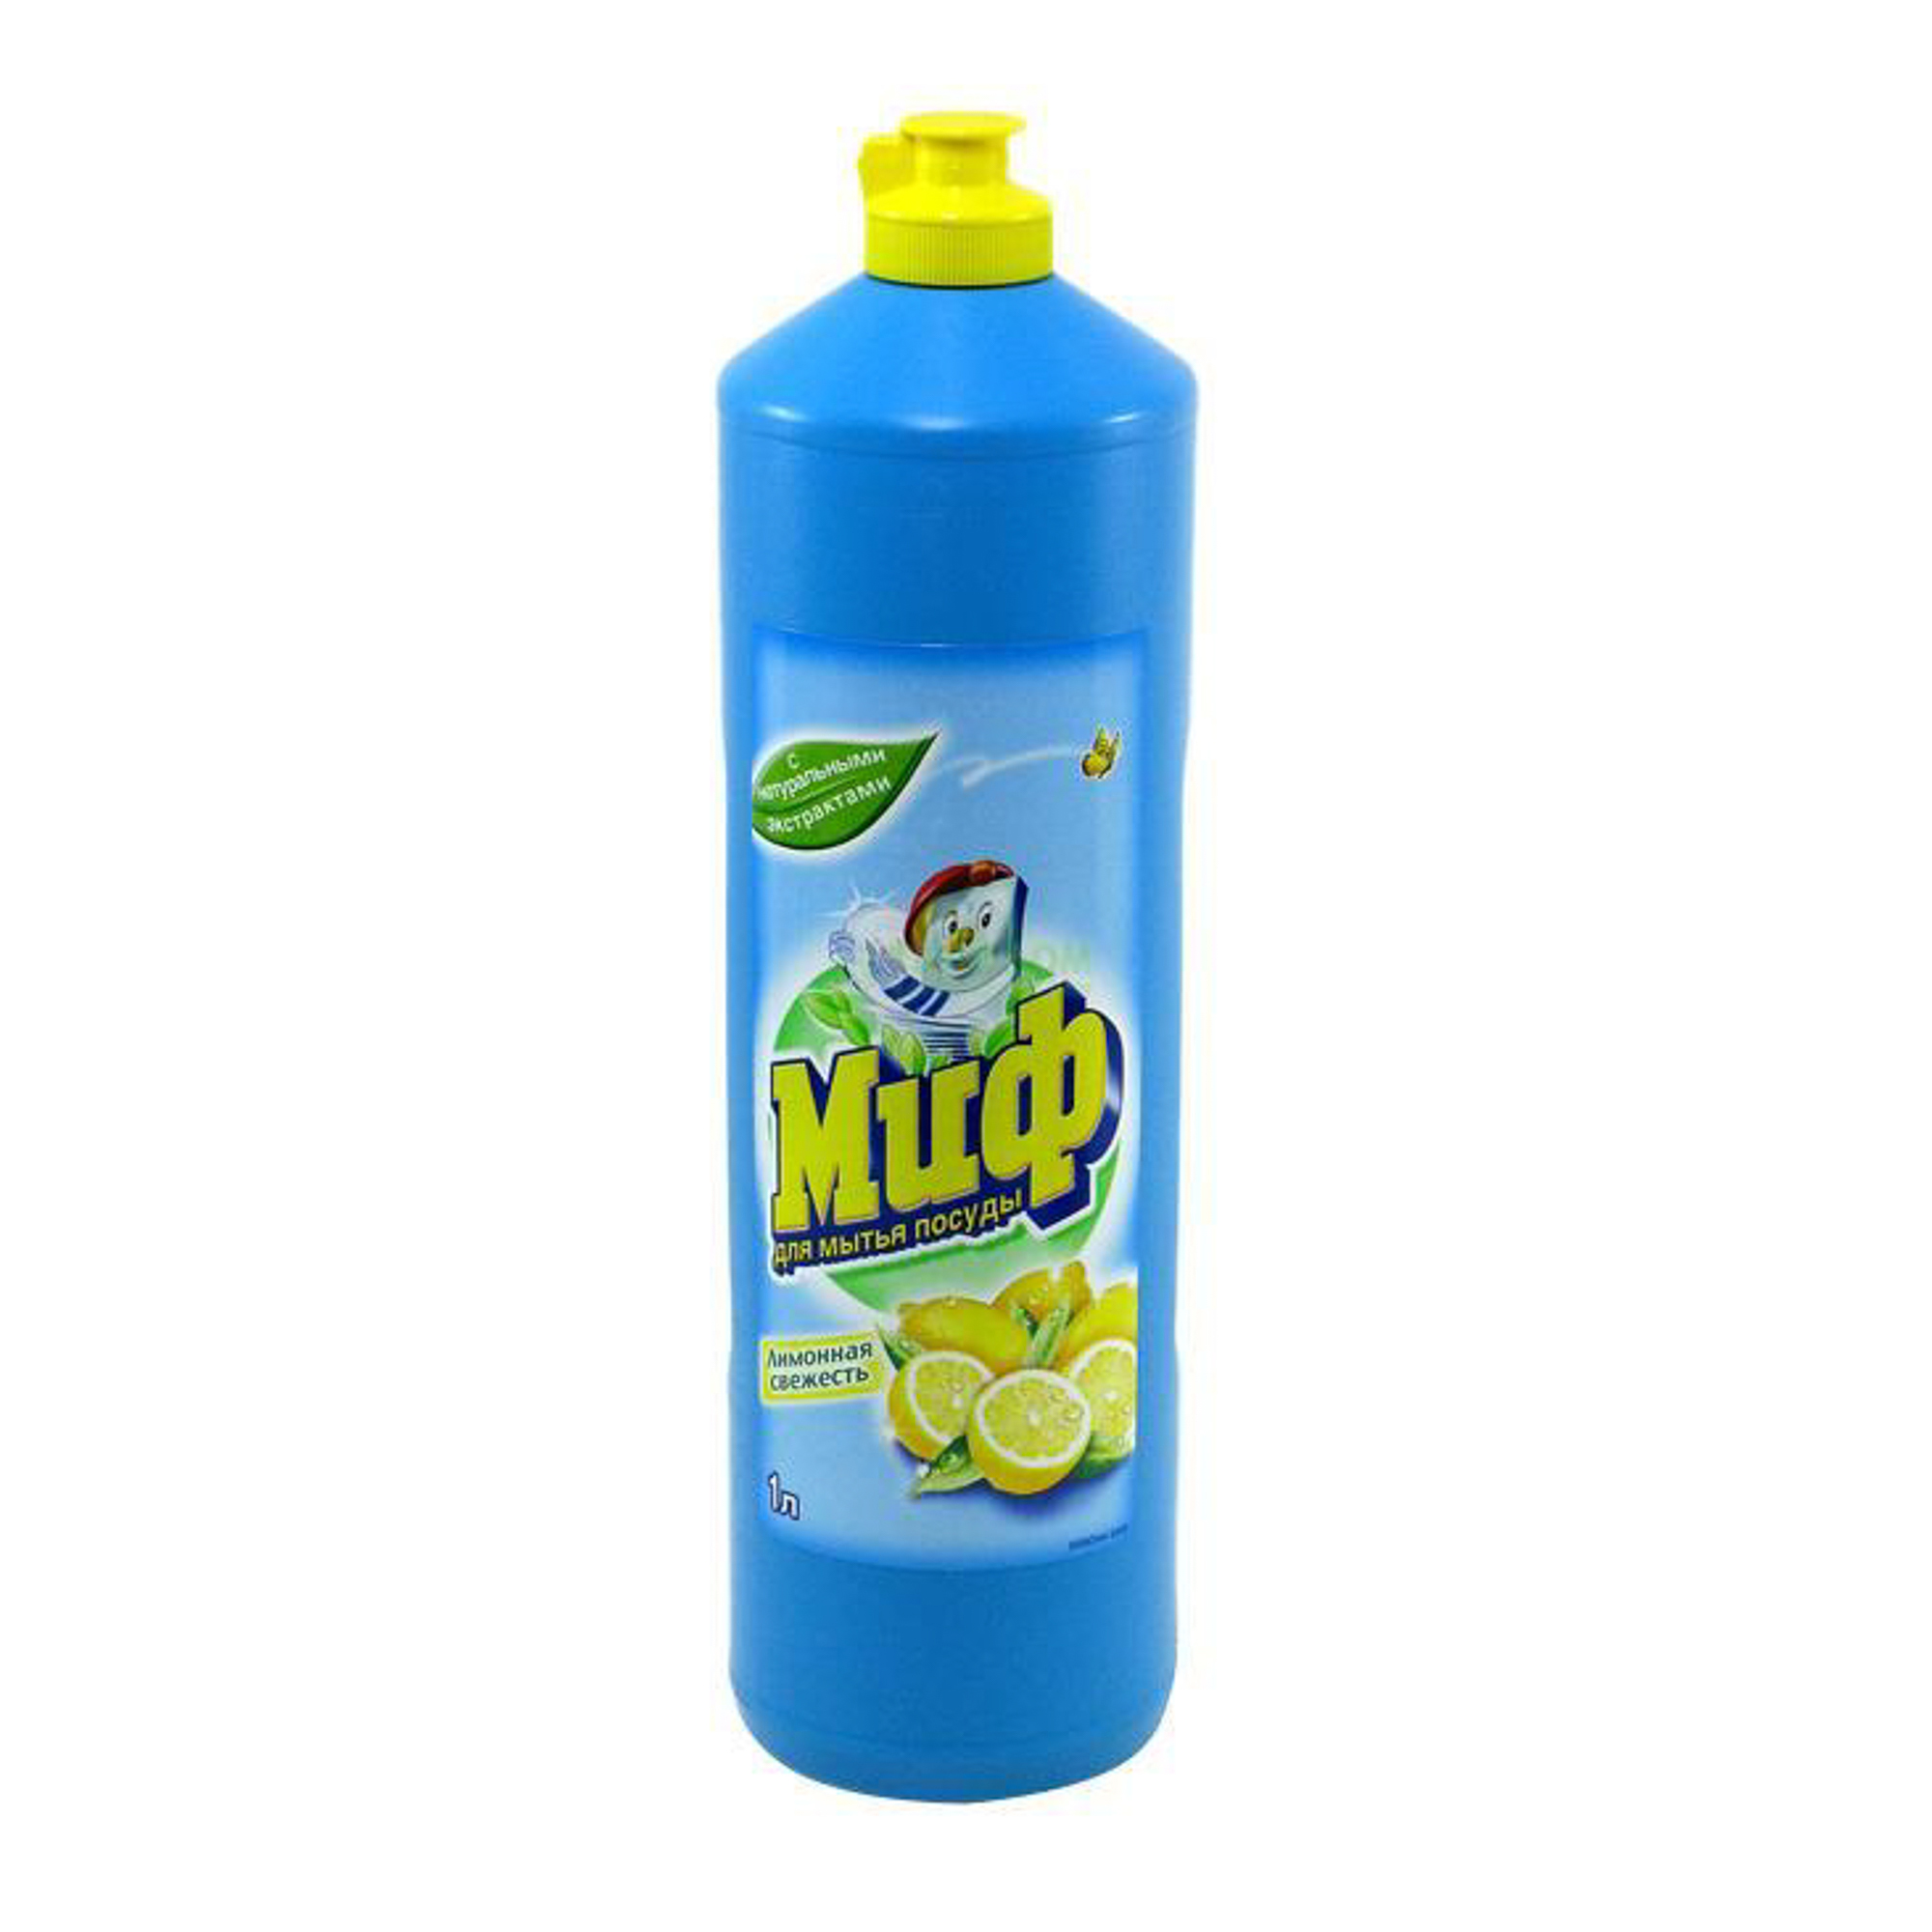 Чистящее средство Миф для мытья посуды Лимонная свежесть 1 л, размер 8 x 8 x 27 см - фото 1